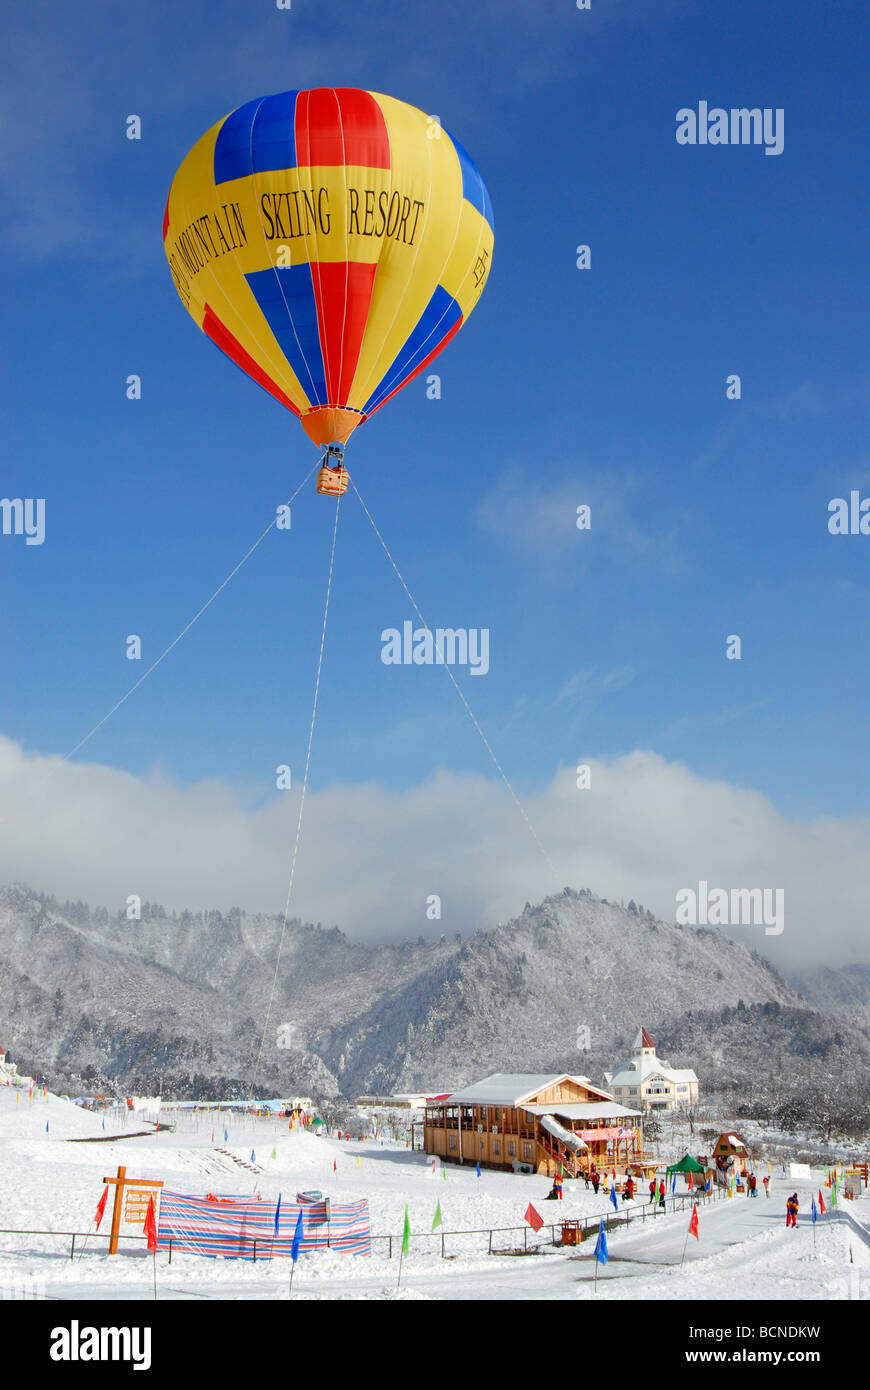 Plus de ballon géant de Ski de Xiling, neige, Montagne Xiling Dayi County, province du Sichuan, Chine Banque D'Images